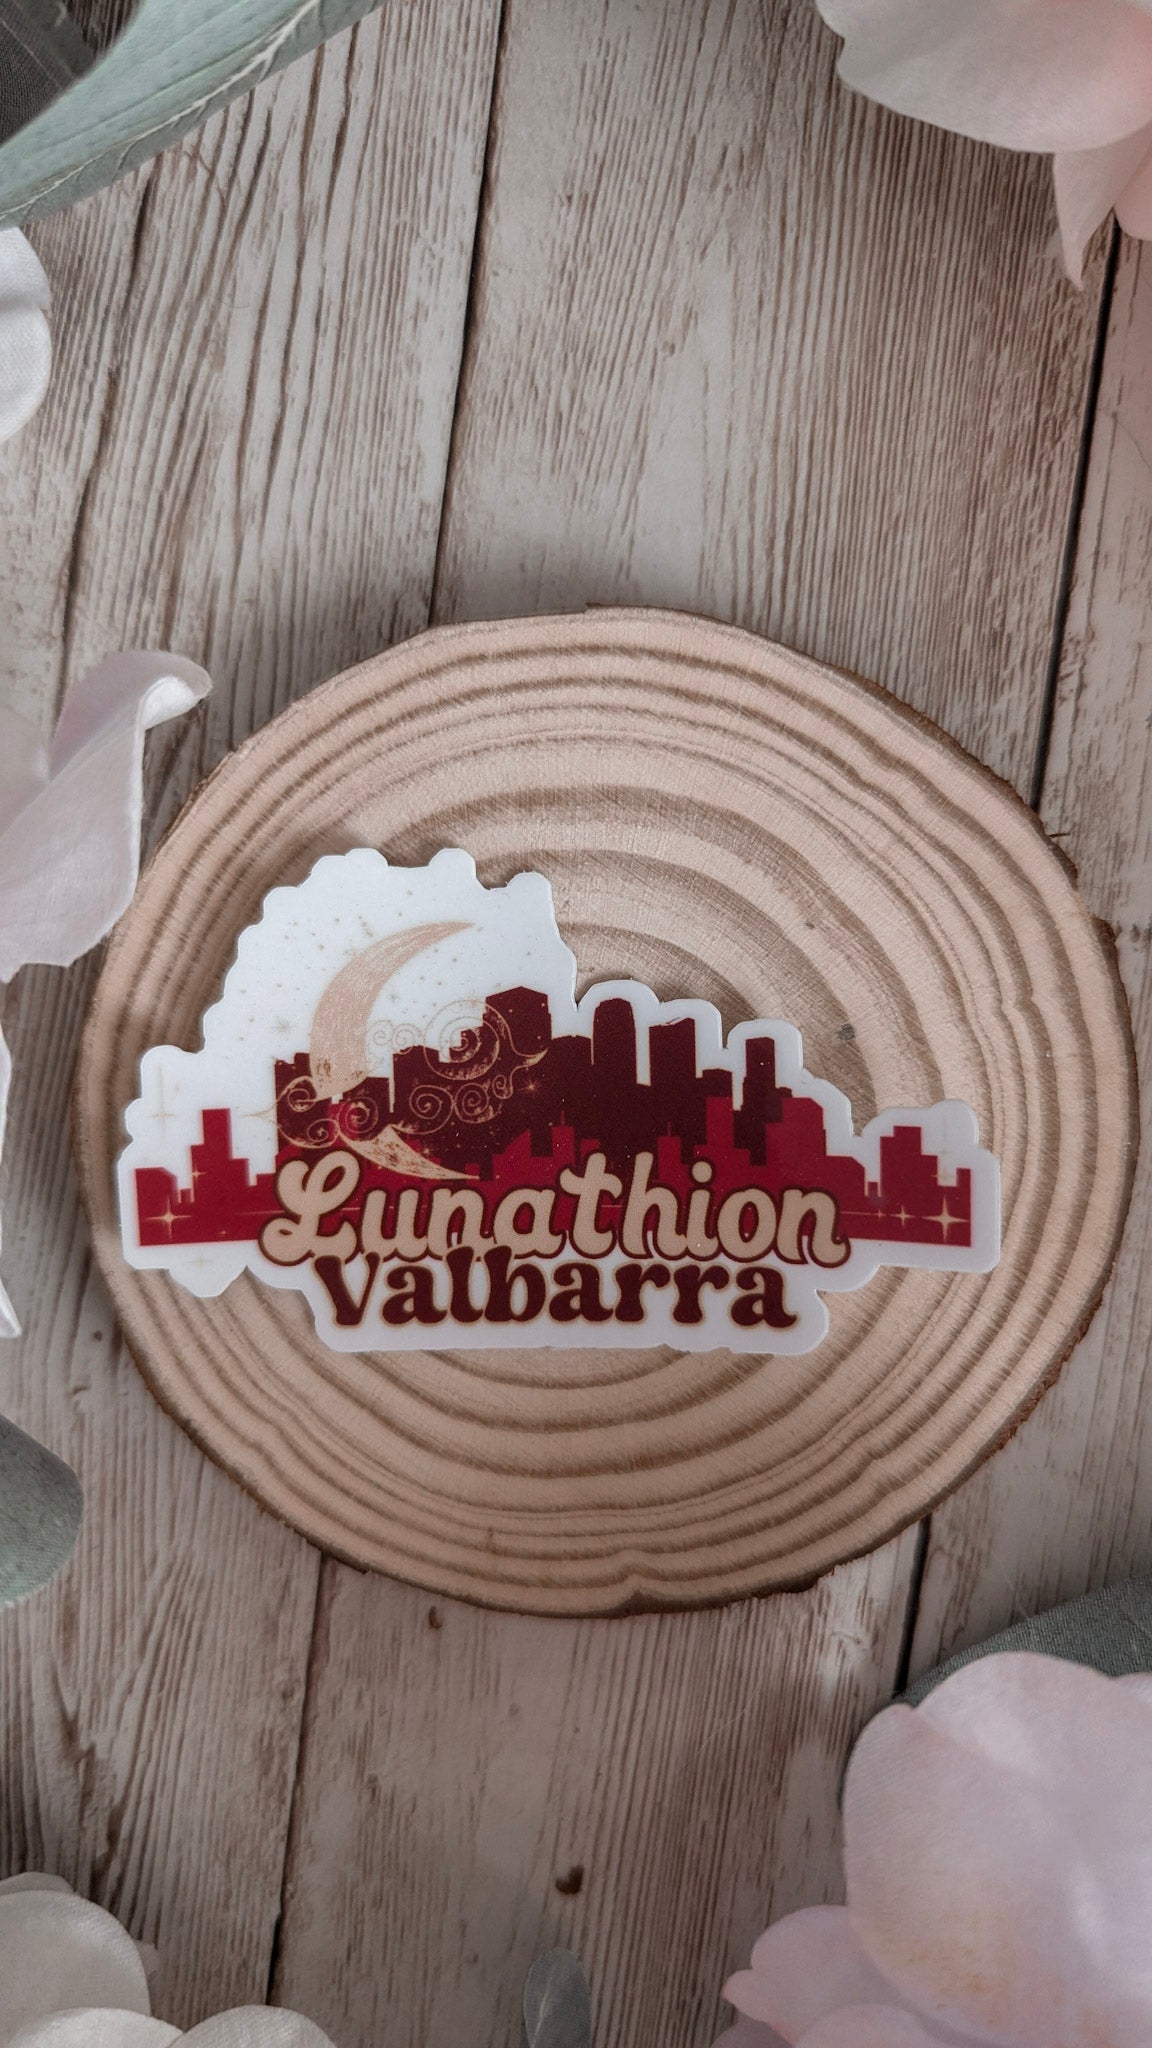 Lunathion, Valbarra Crescent City Sticker